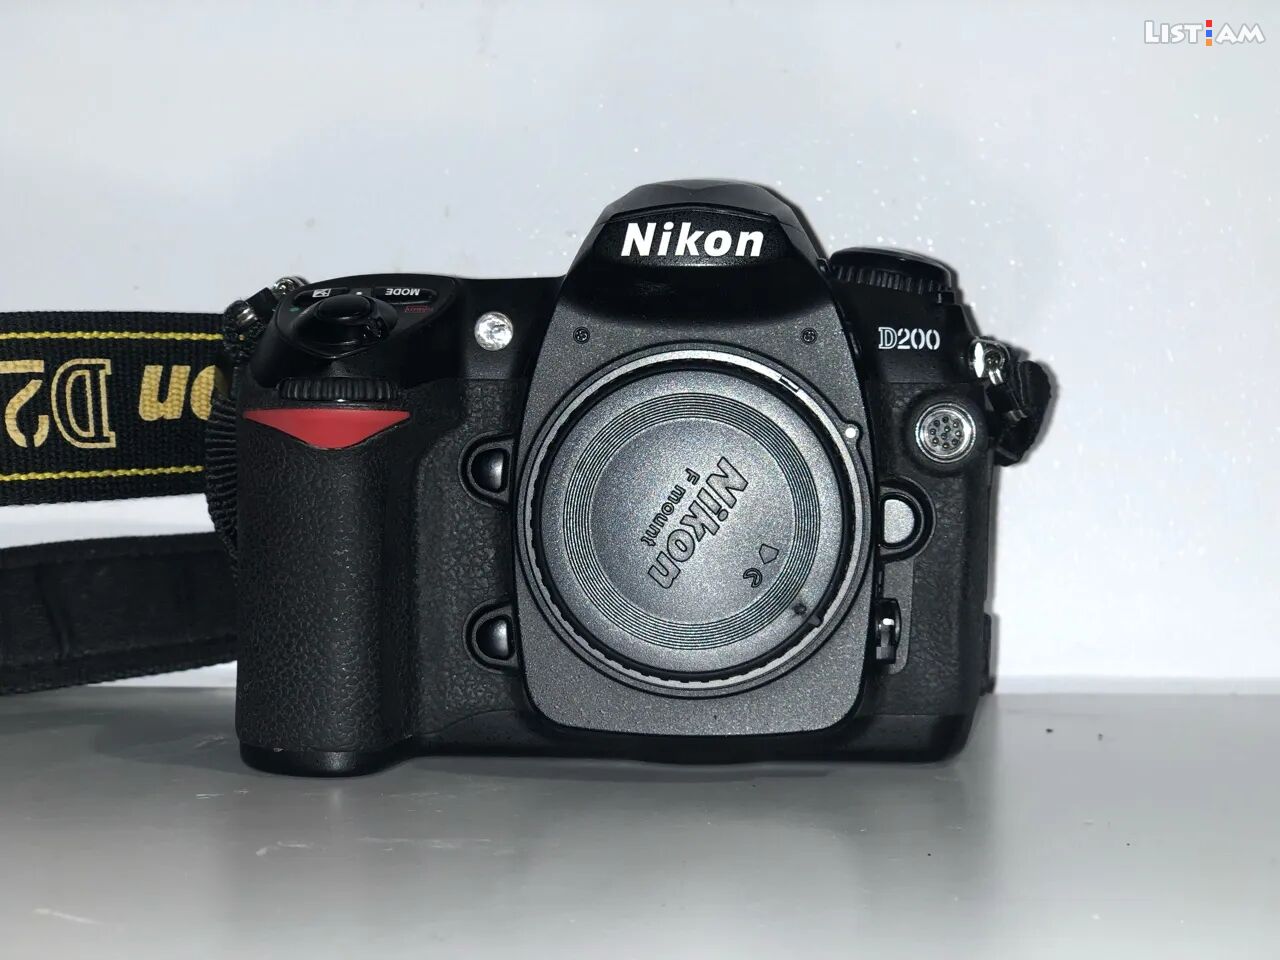 Nikon d200 camera